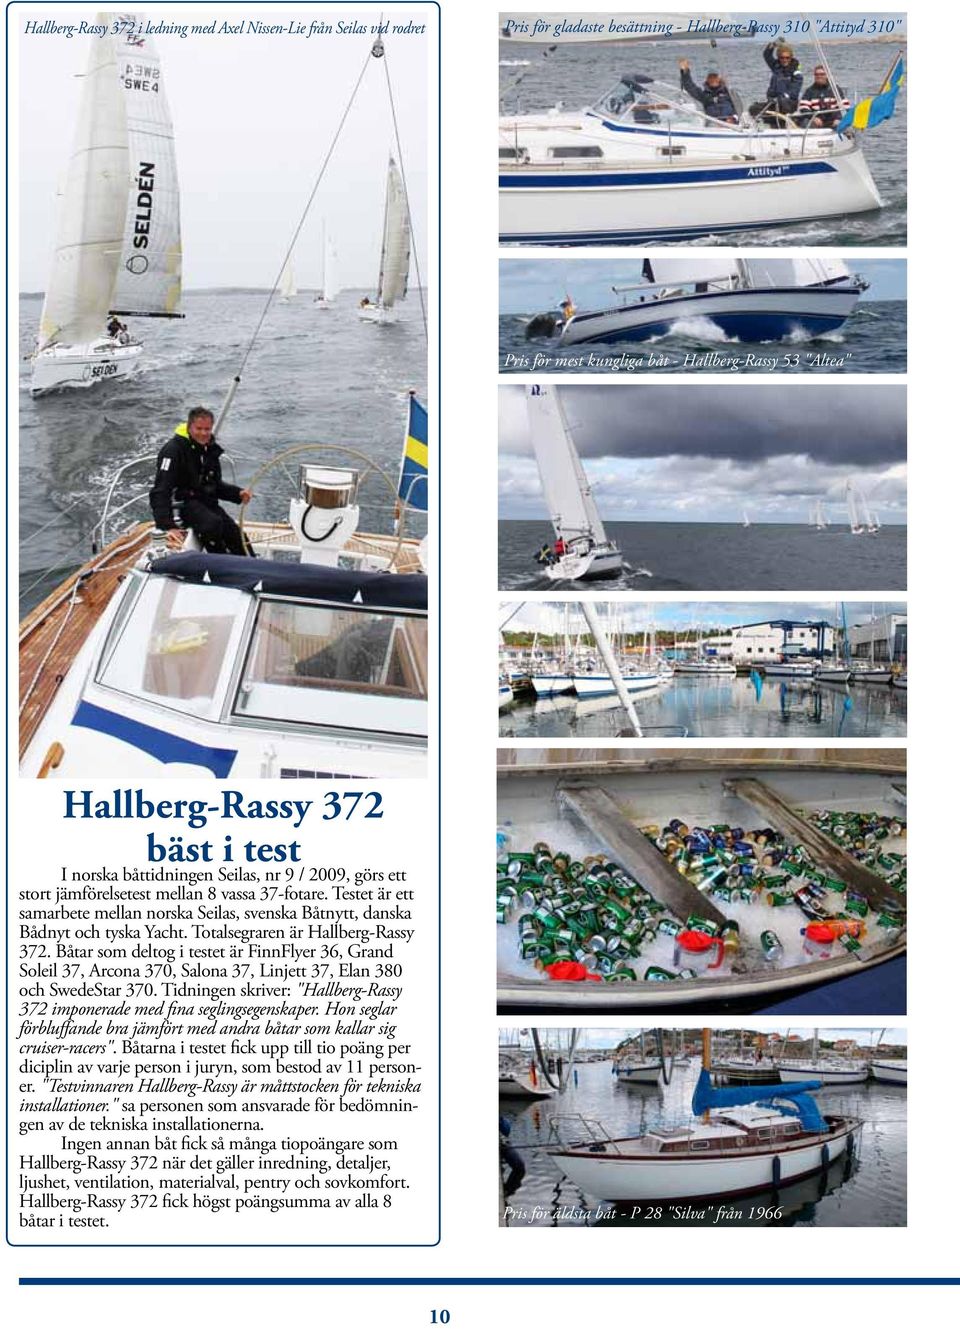 Testet är ett samarbete mellan norska Seilas, svenska Båtnytt, danska Bådnyt och tyska Yacht. Totalsegraren är Hallberg-Rassy 372.